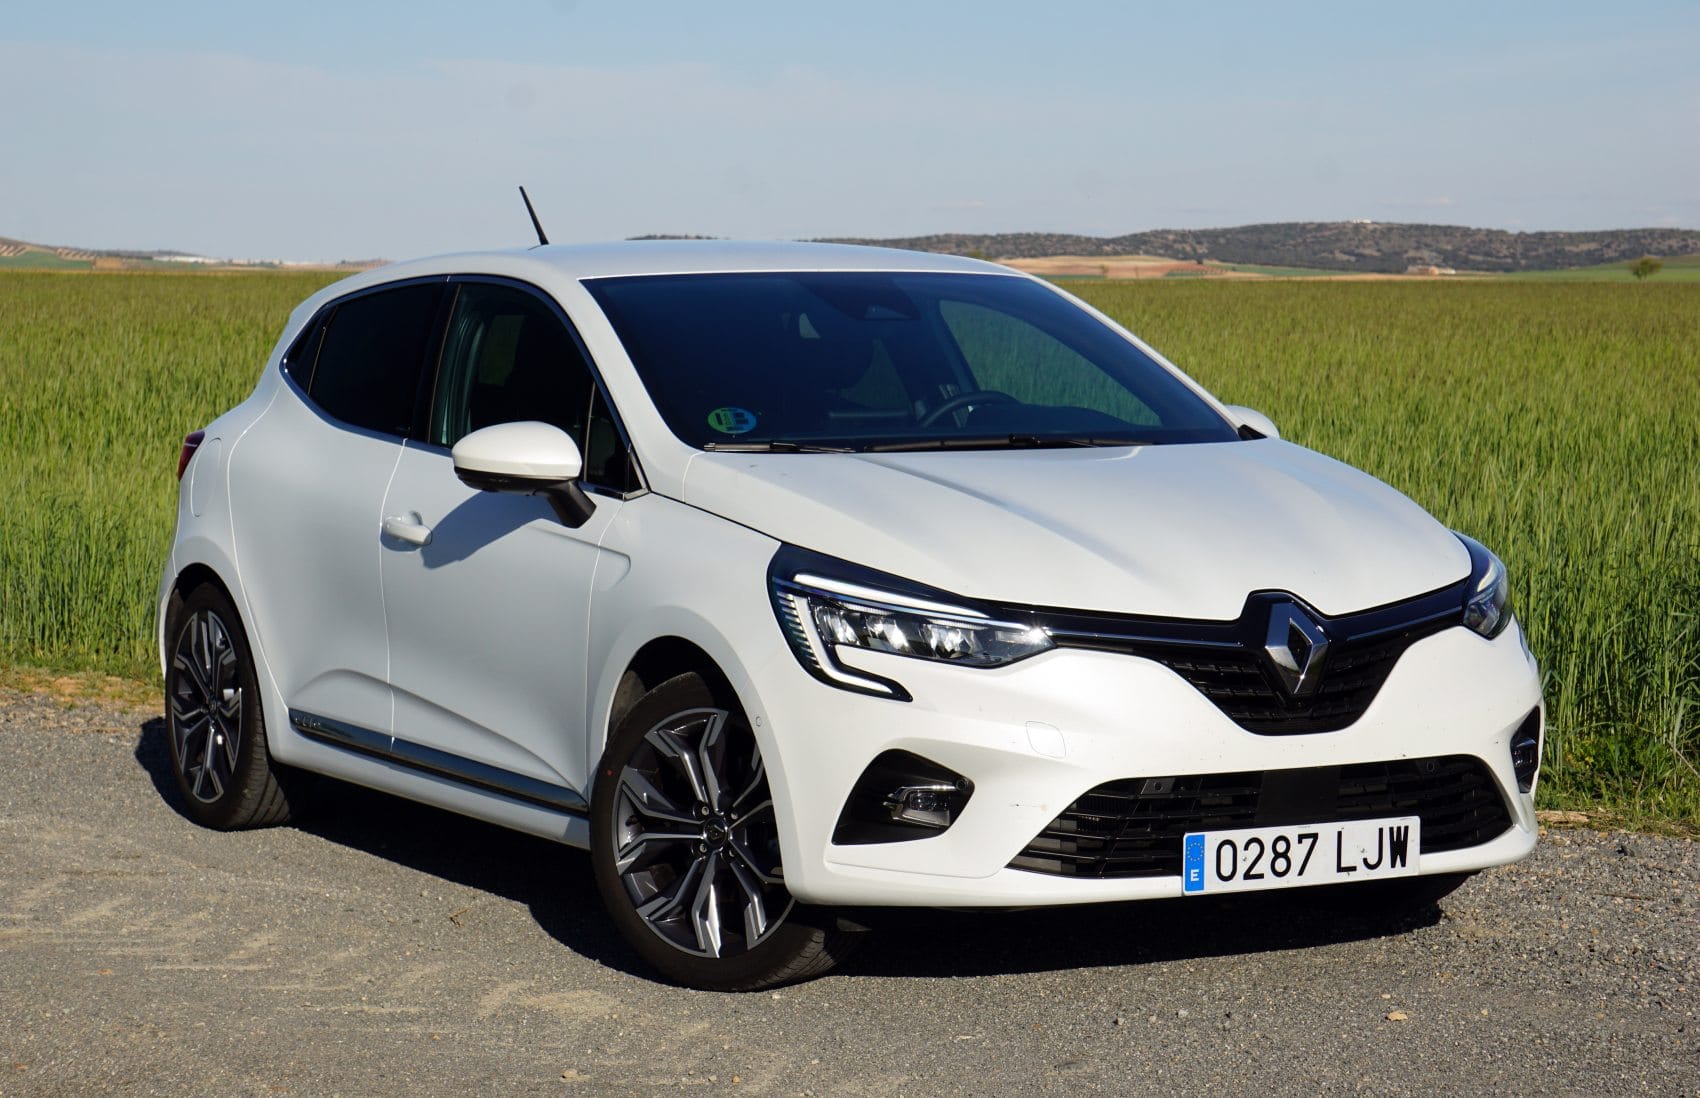 Precios del Renault Clio nuevo en oferta para todos sus motores y acabados